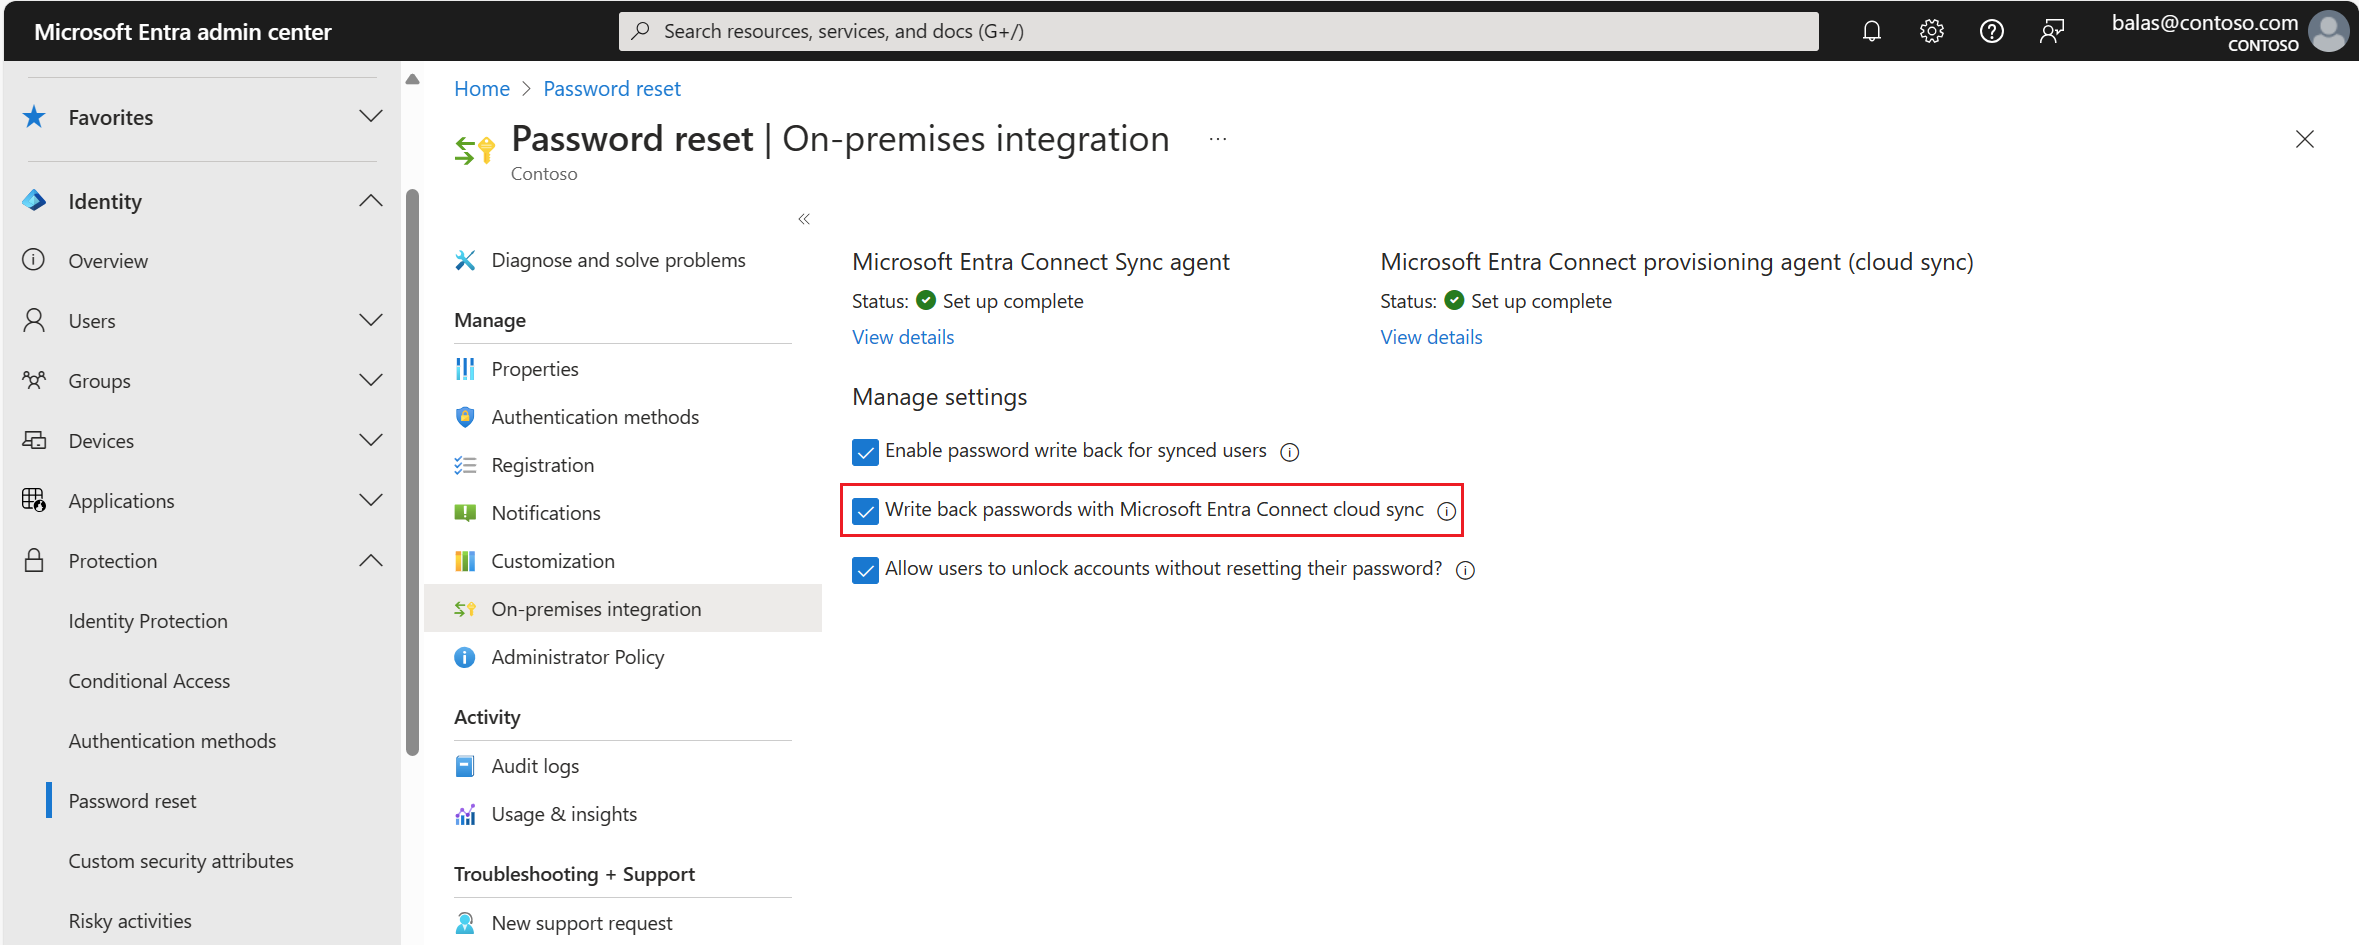 Снимок экрана: обратная запись паролей, включенная для идентификатора Microsoft Entra в локальную интеграцию.